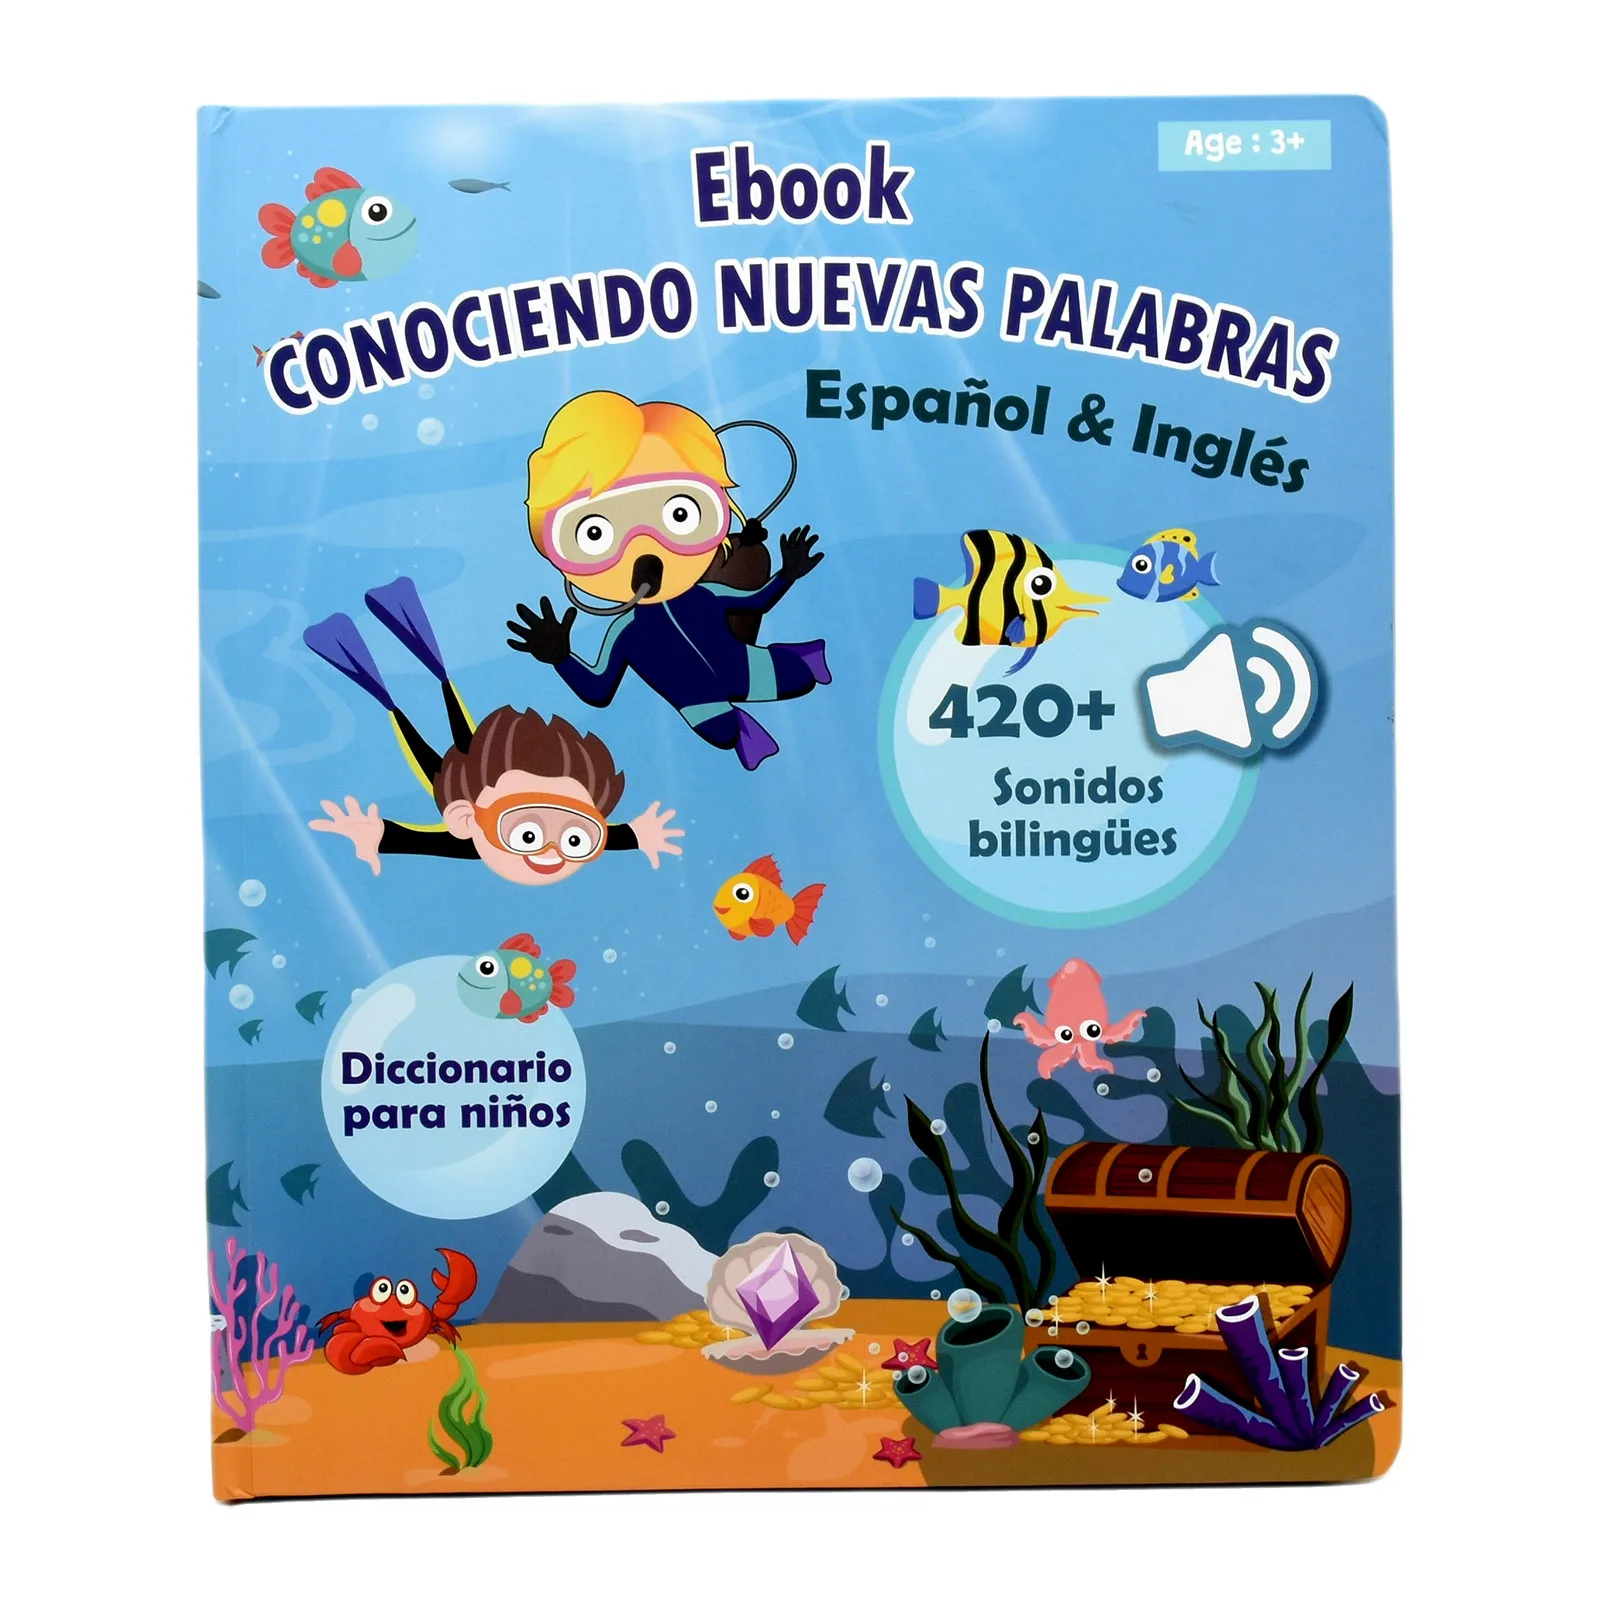 

Montessori Language Learning Machine Spanish English Electronic Reading Books Toddler Baby Educational Toys Multifunction Ebook